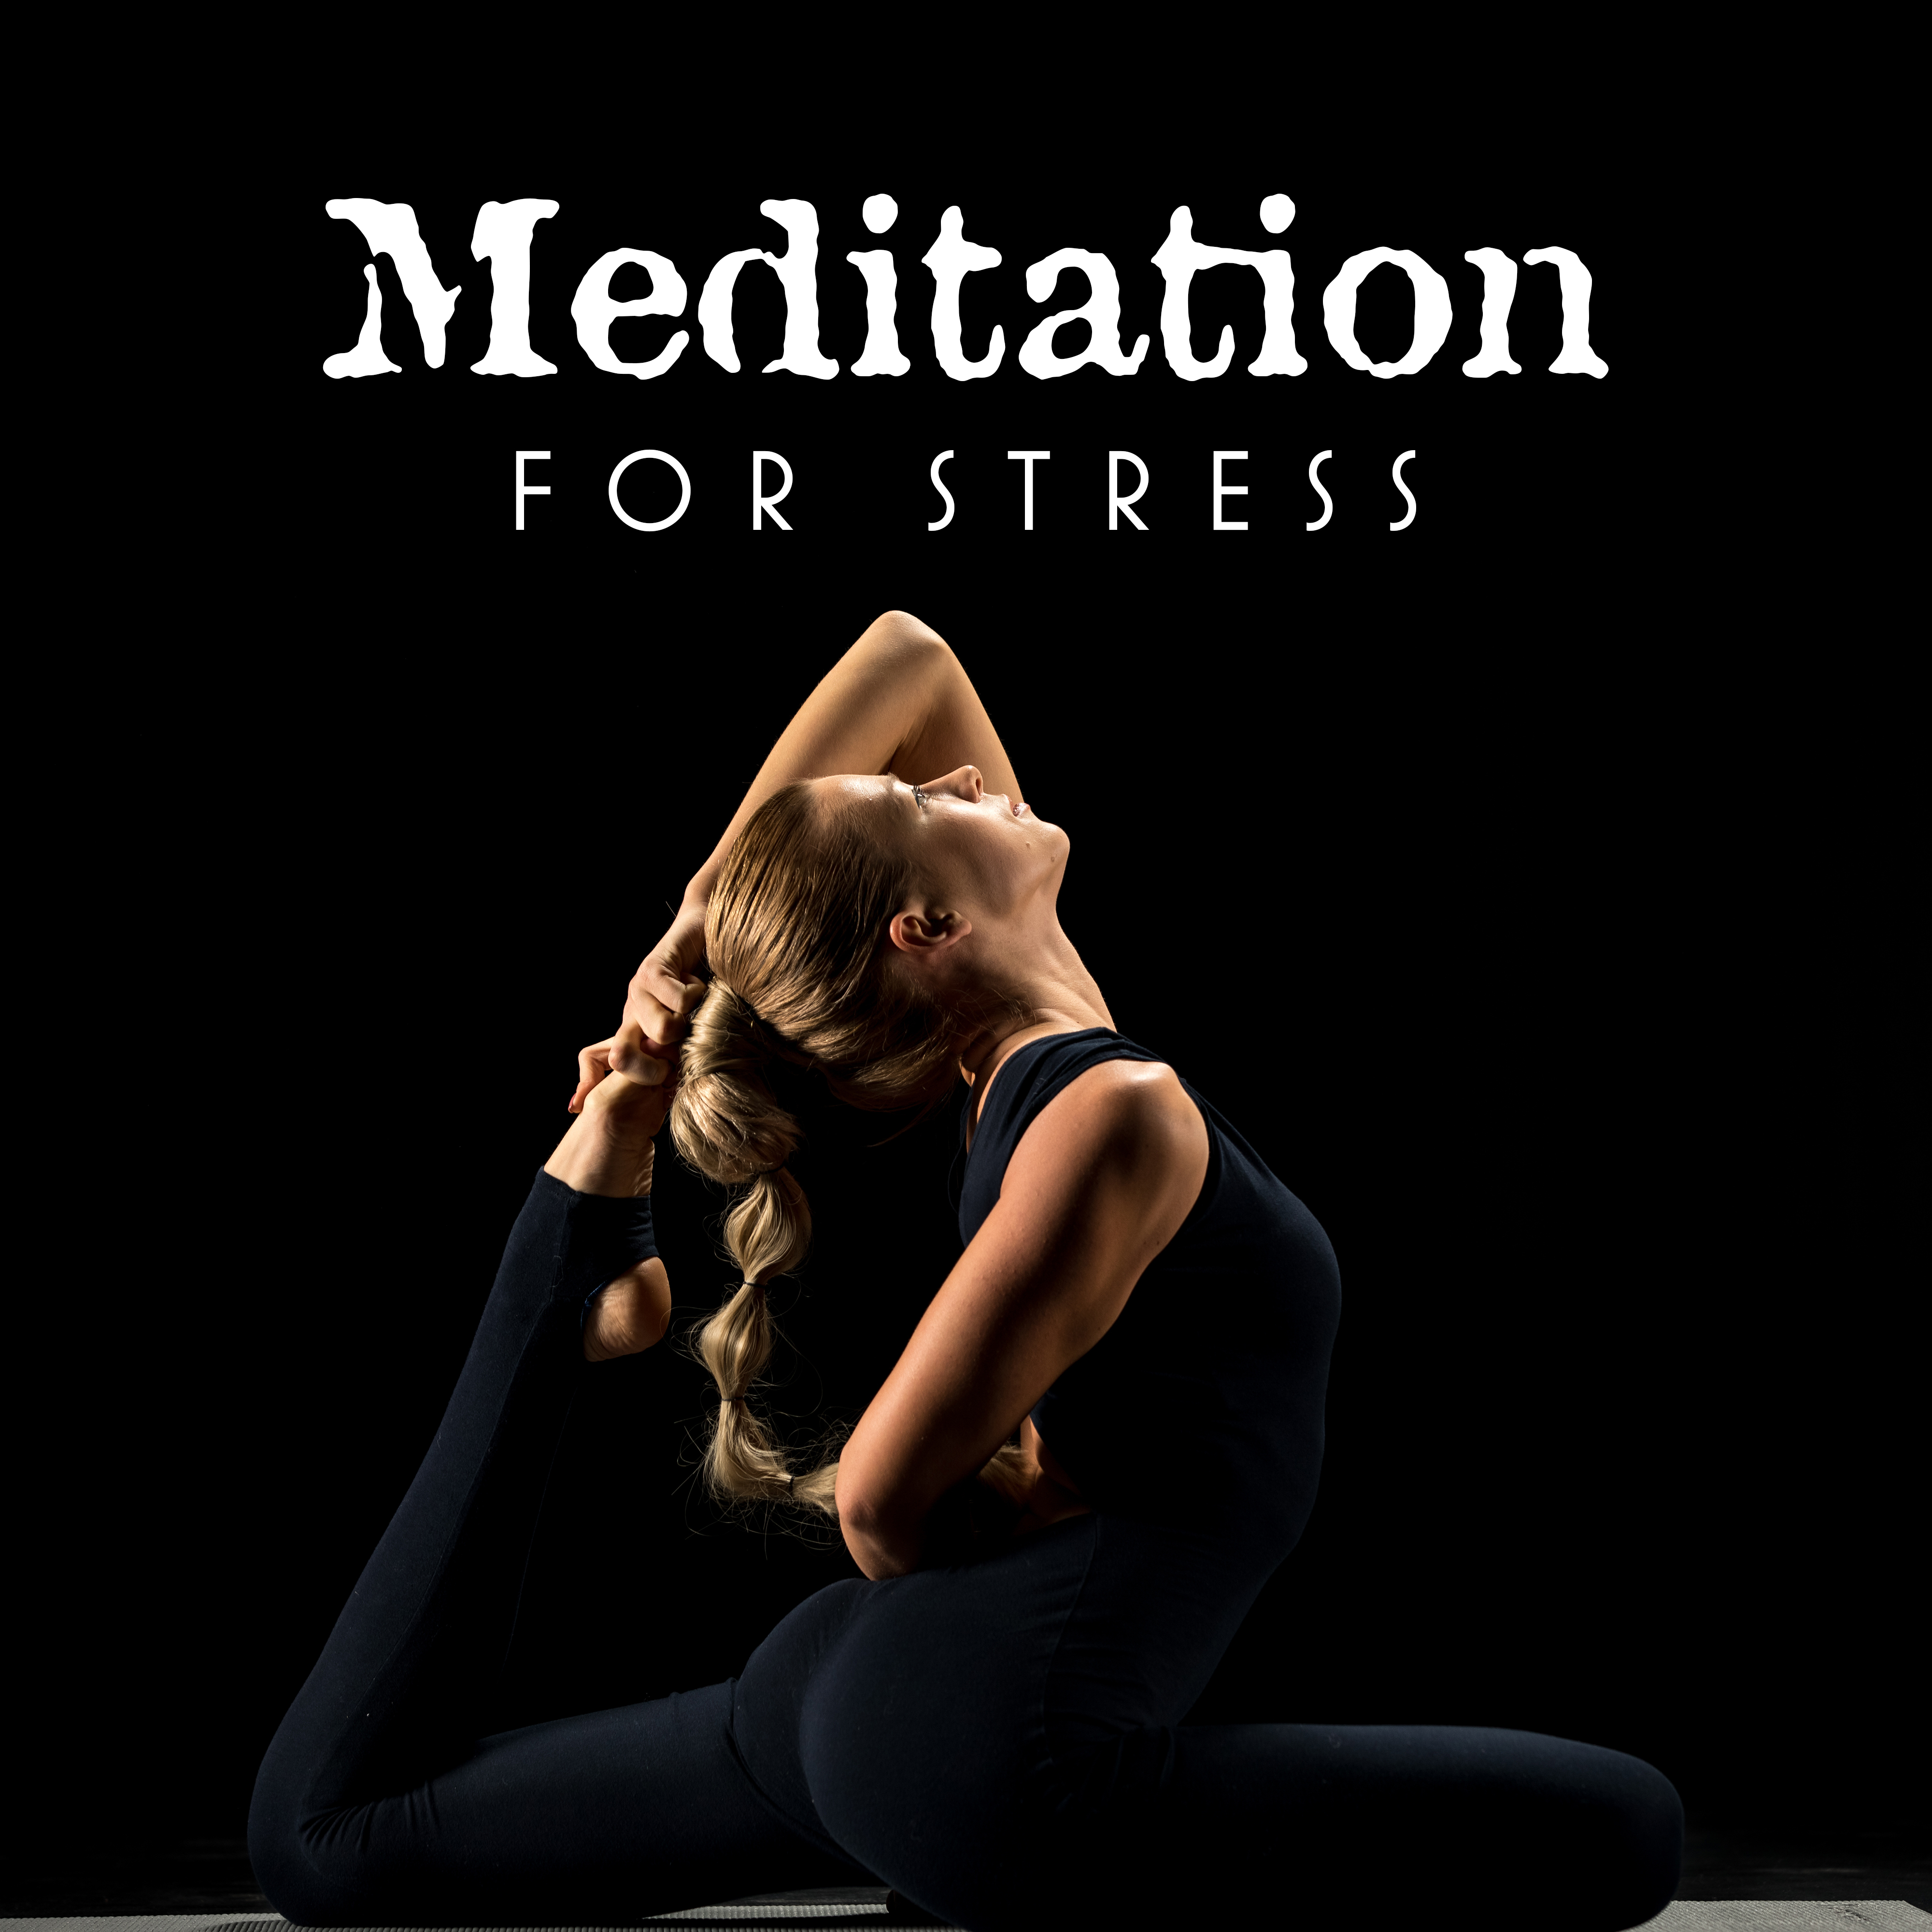 Anti-Stress Meditation